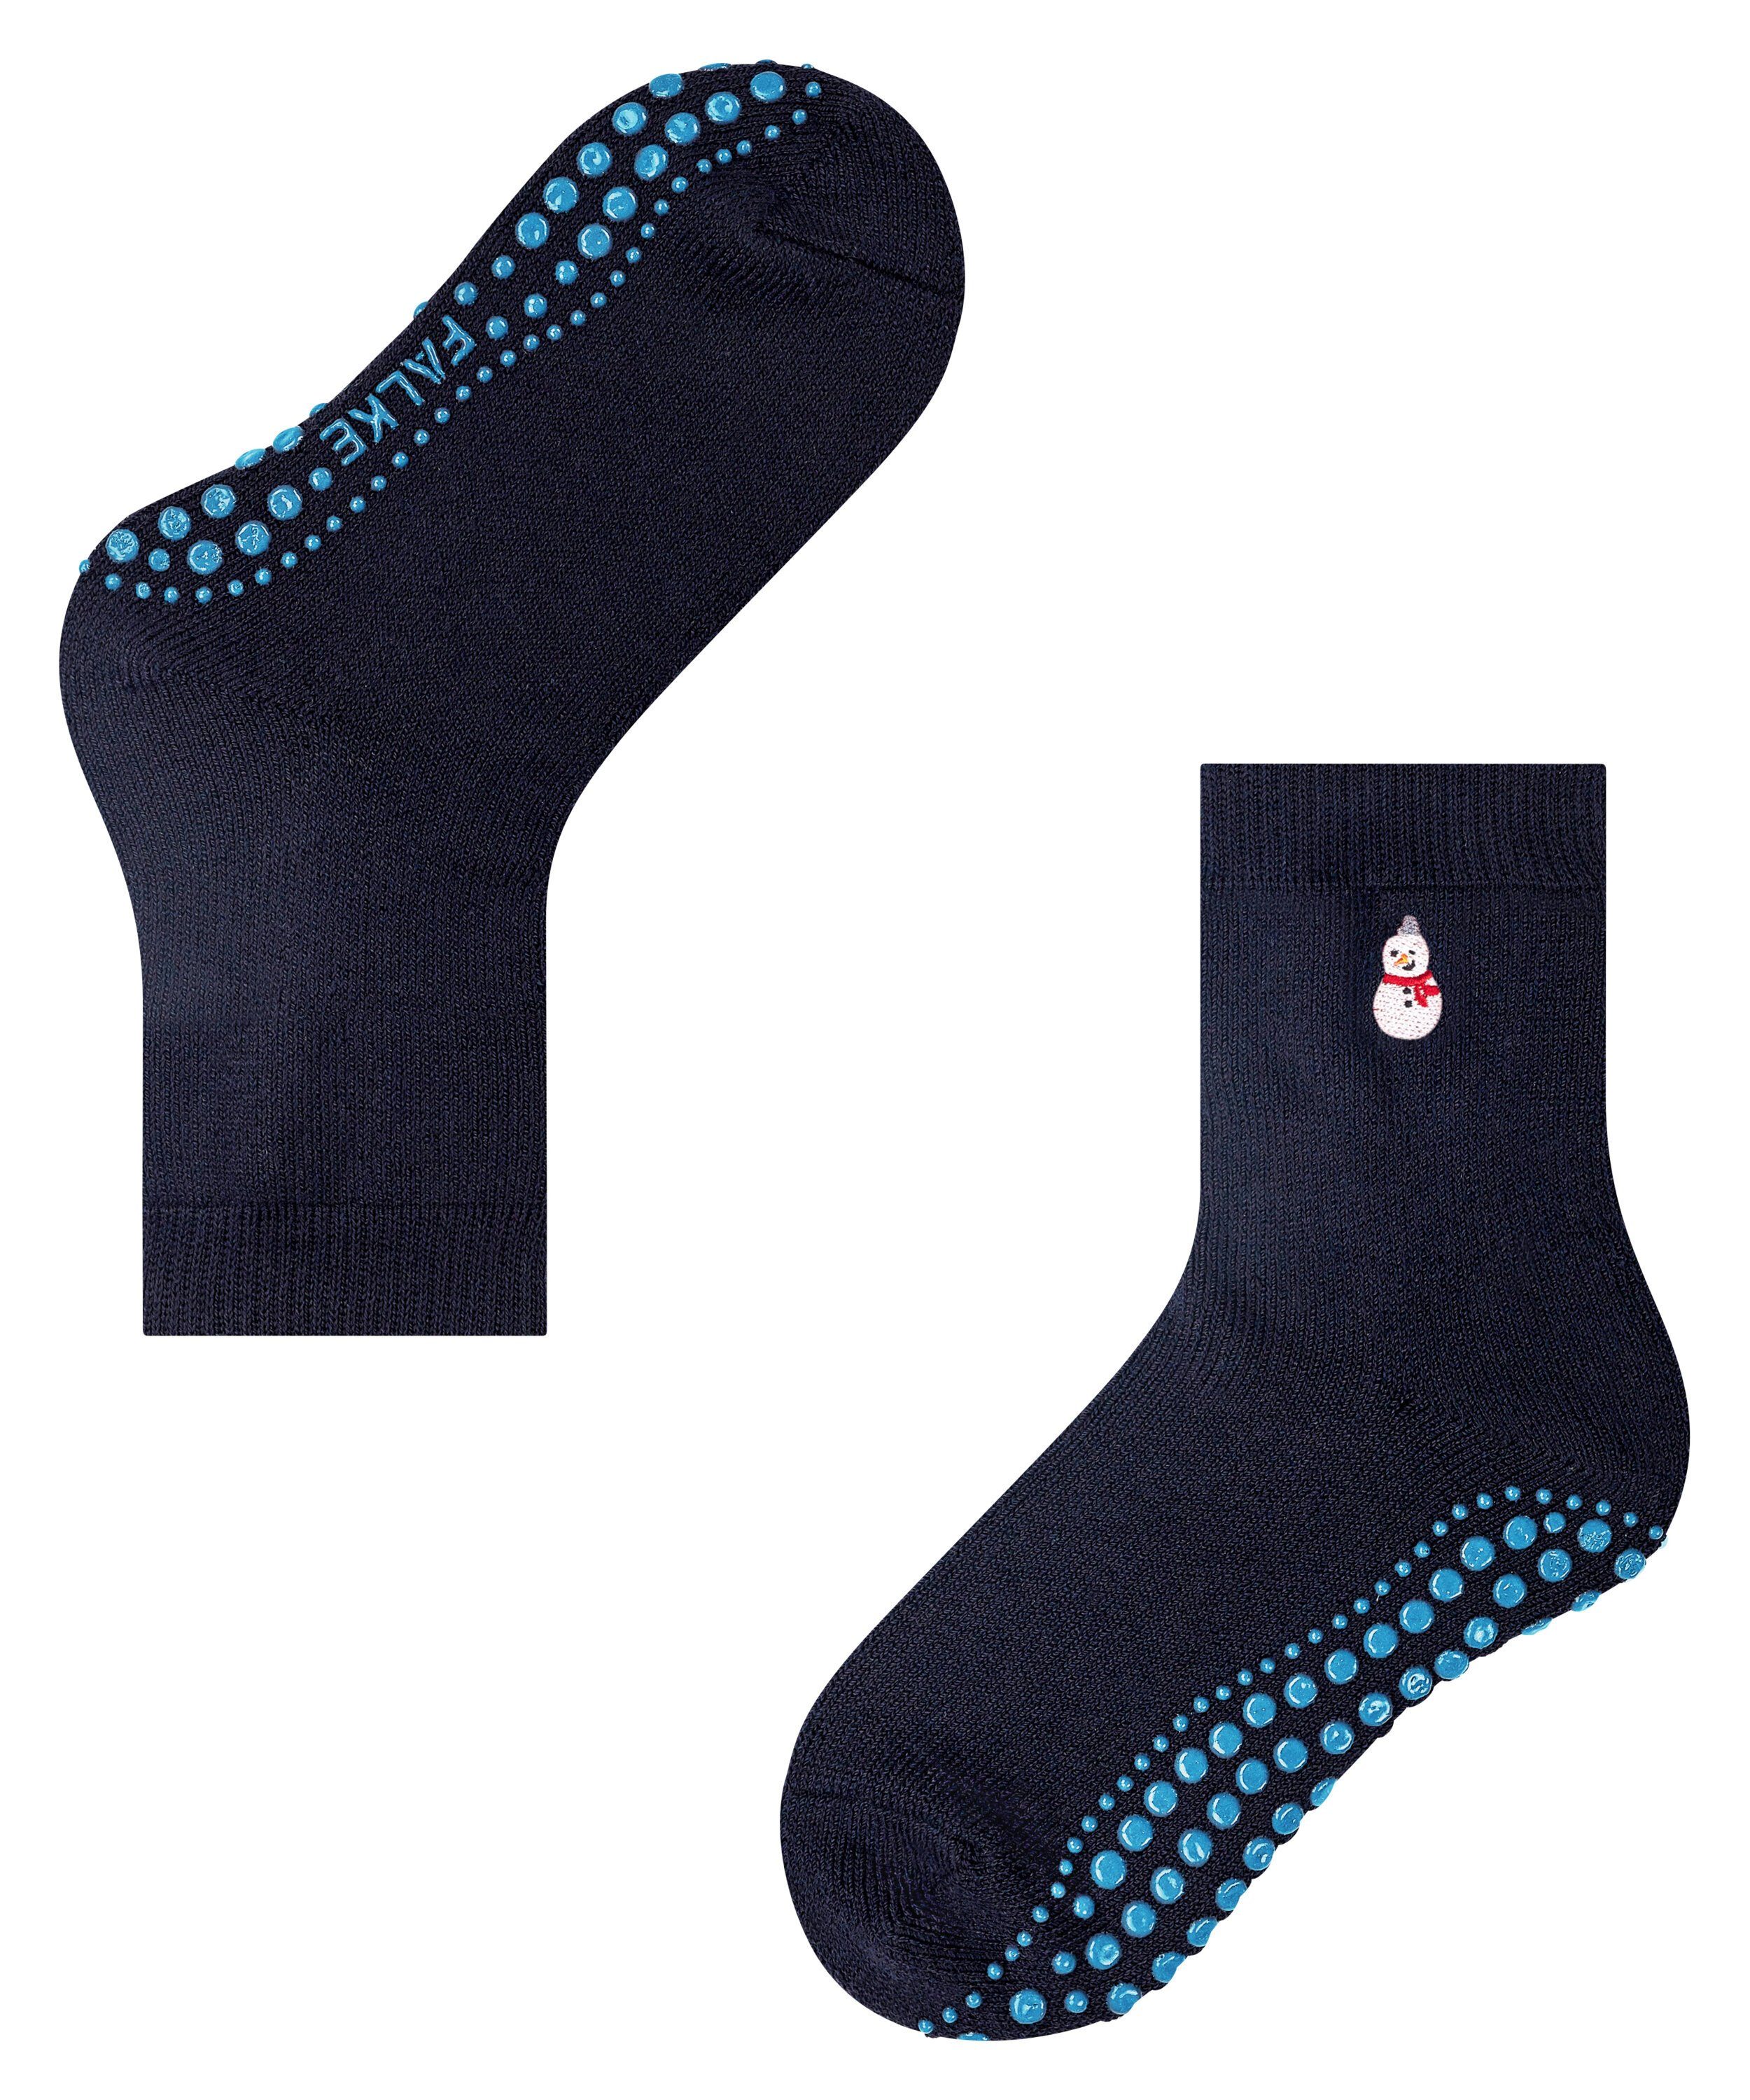 FALKE Socken Catspads Embroidery (1-Paar) navy dark (6370)